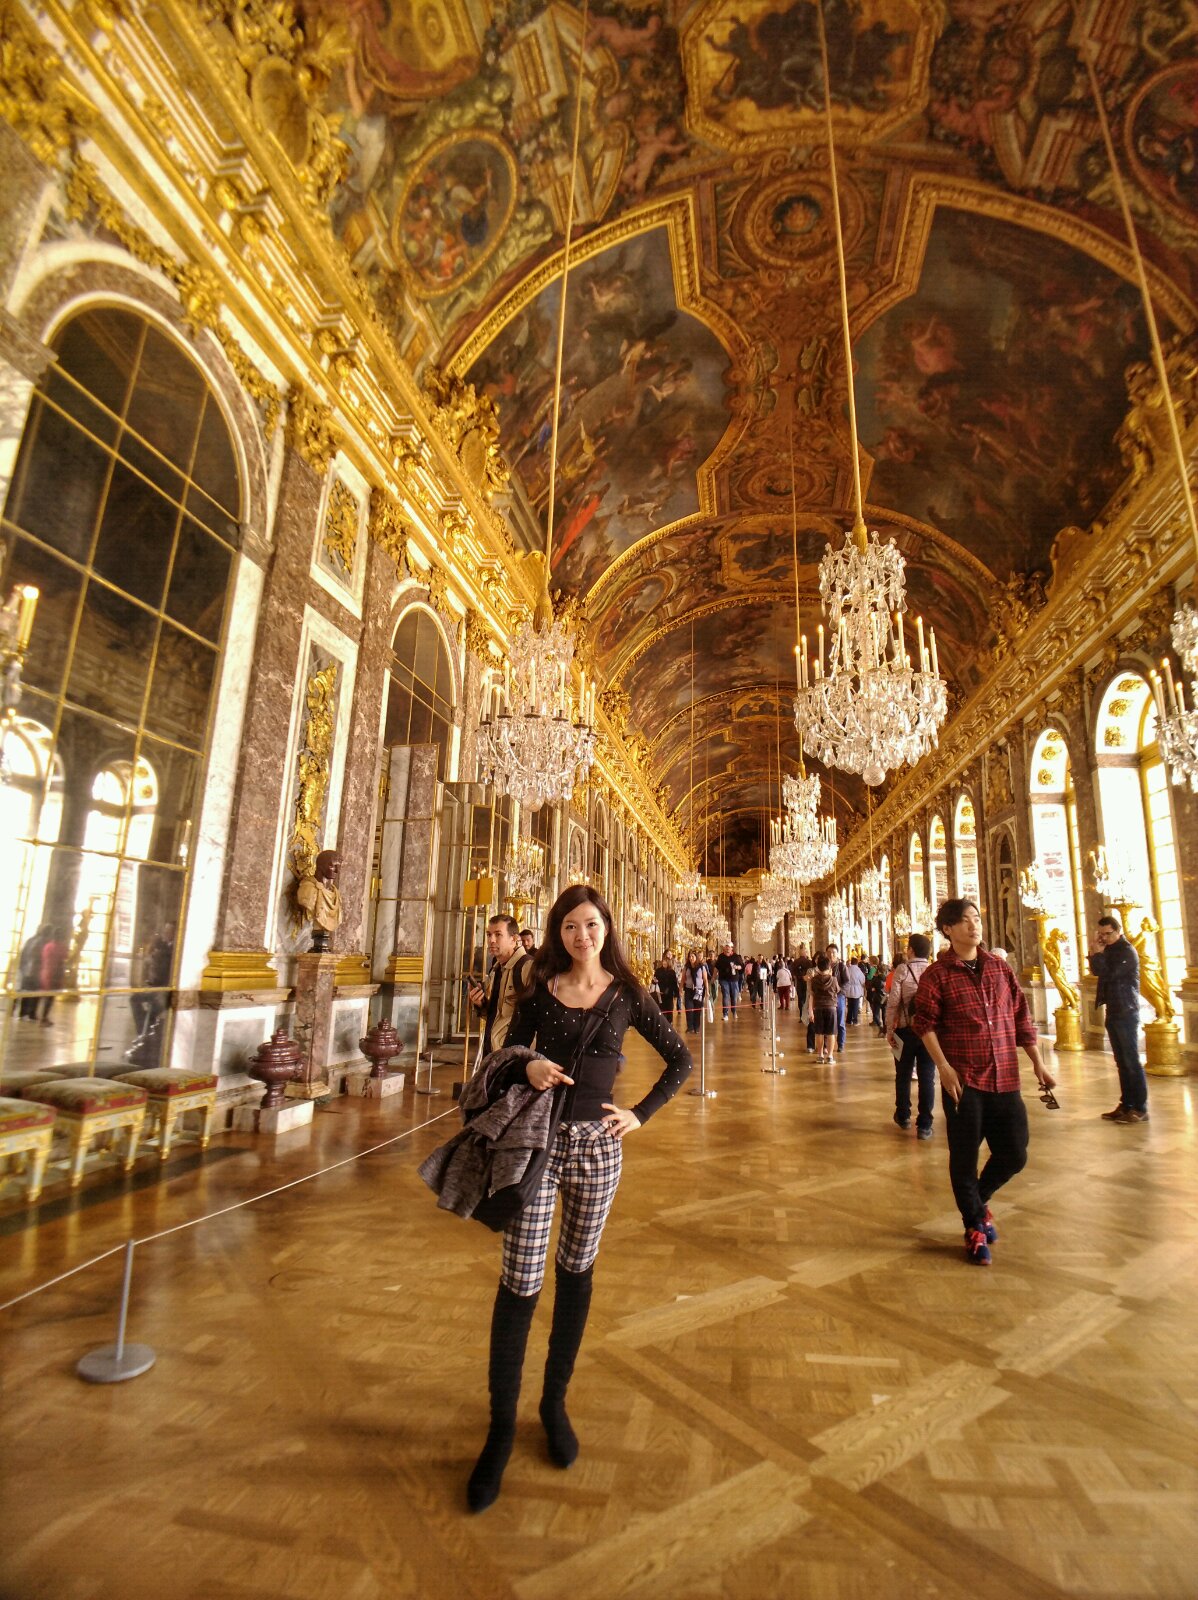 凡尔赛宫殿印象